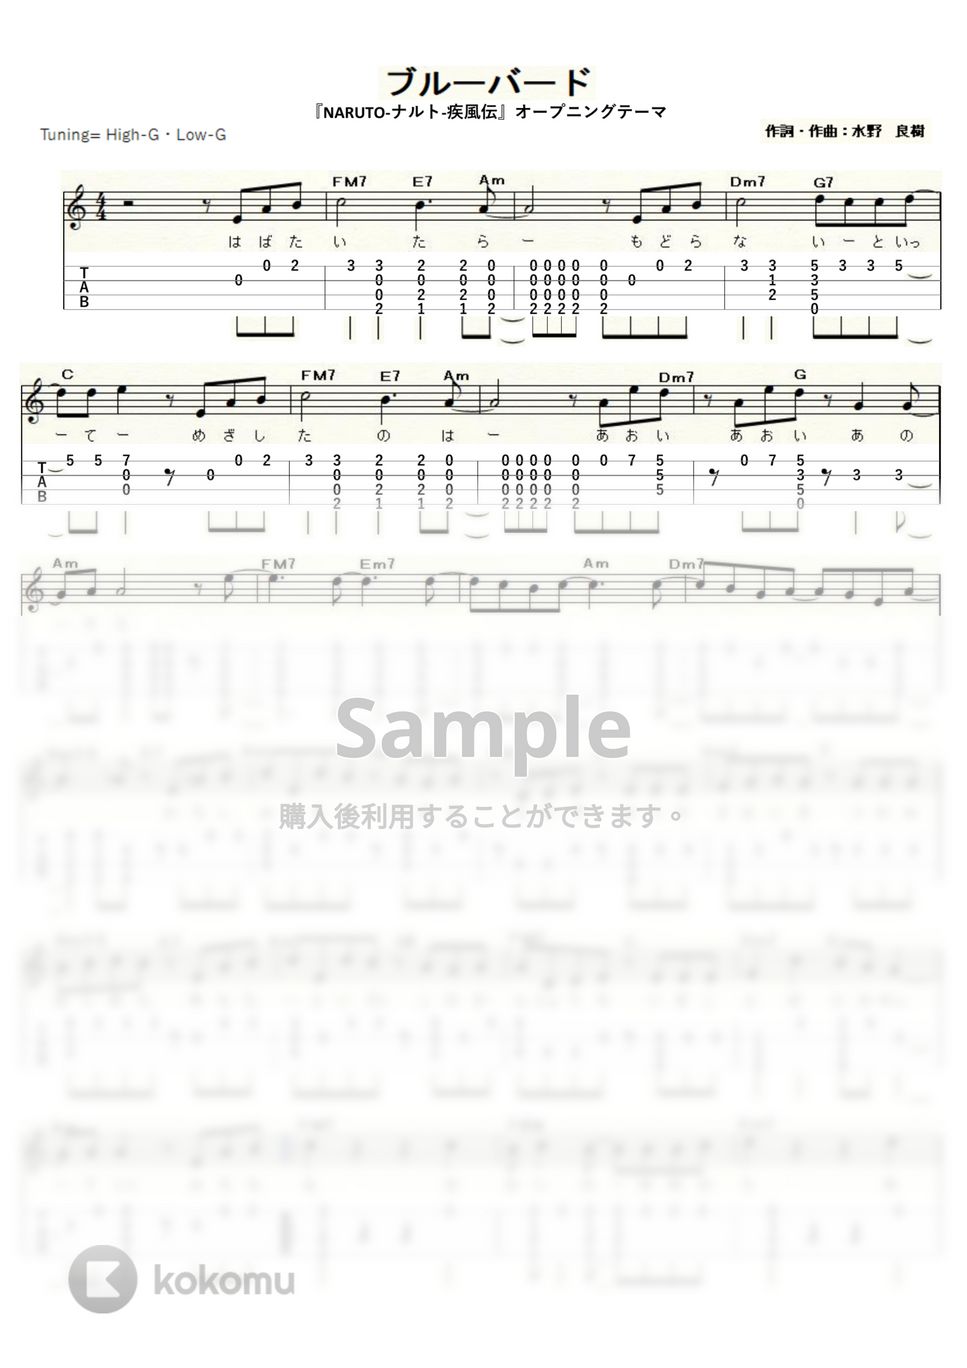 いきものがかり - ブルーバード (ｳｸﾚﾚｿﾛ / High-G,Low-G / 中級) by ukulelepapa